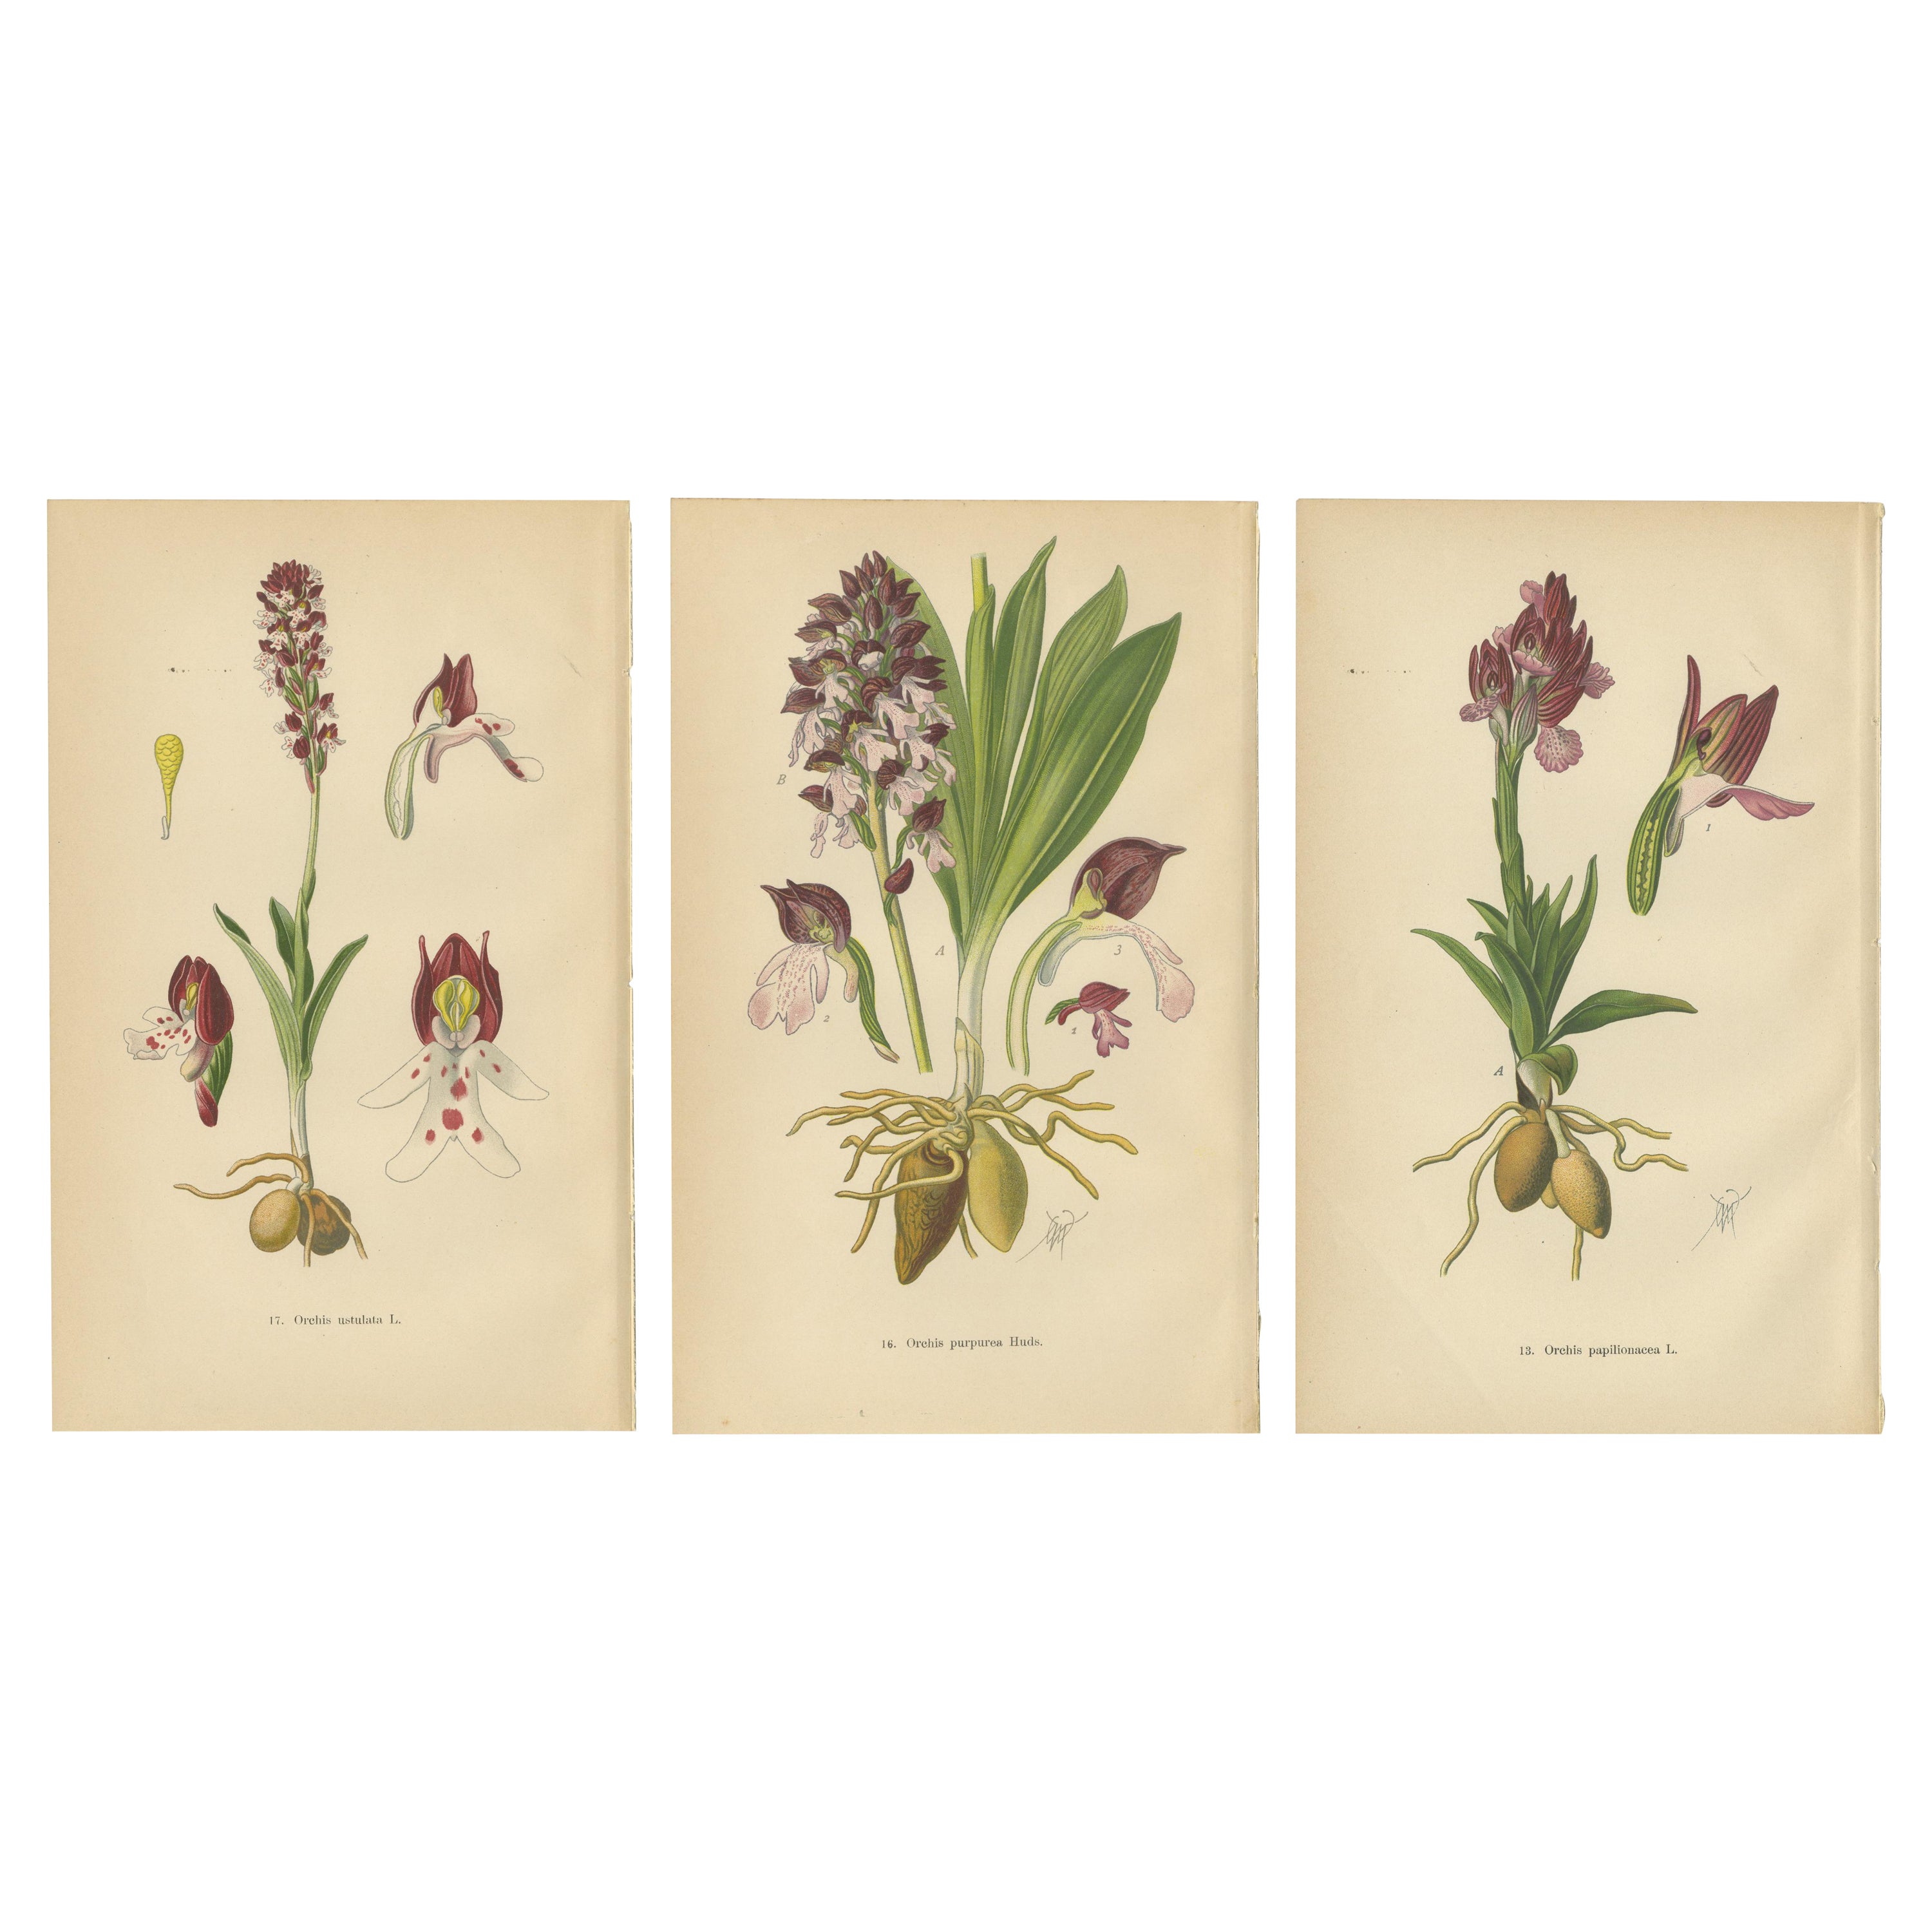 Ephemere Eleganz: Orchideen von 1904 in Müllers Illustrationen